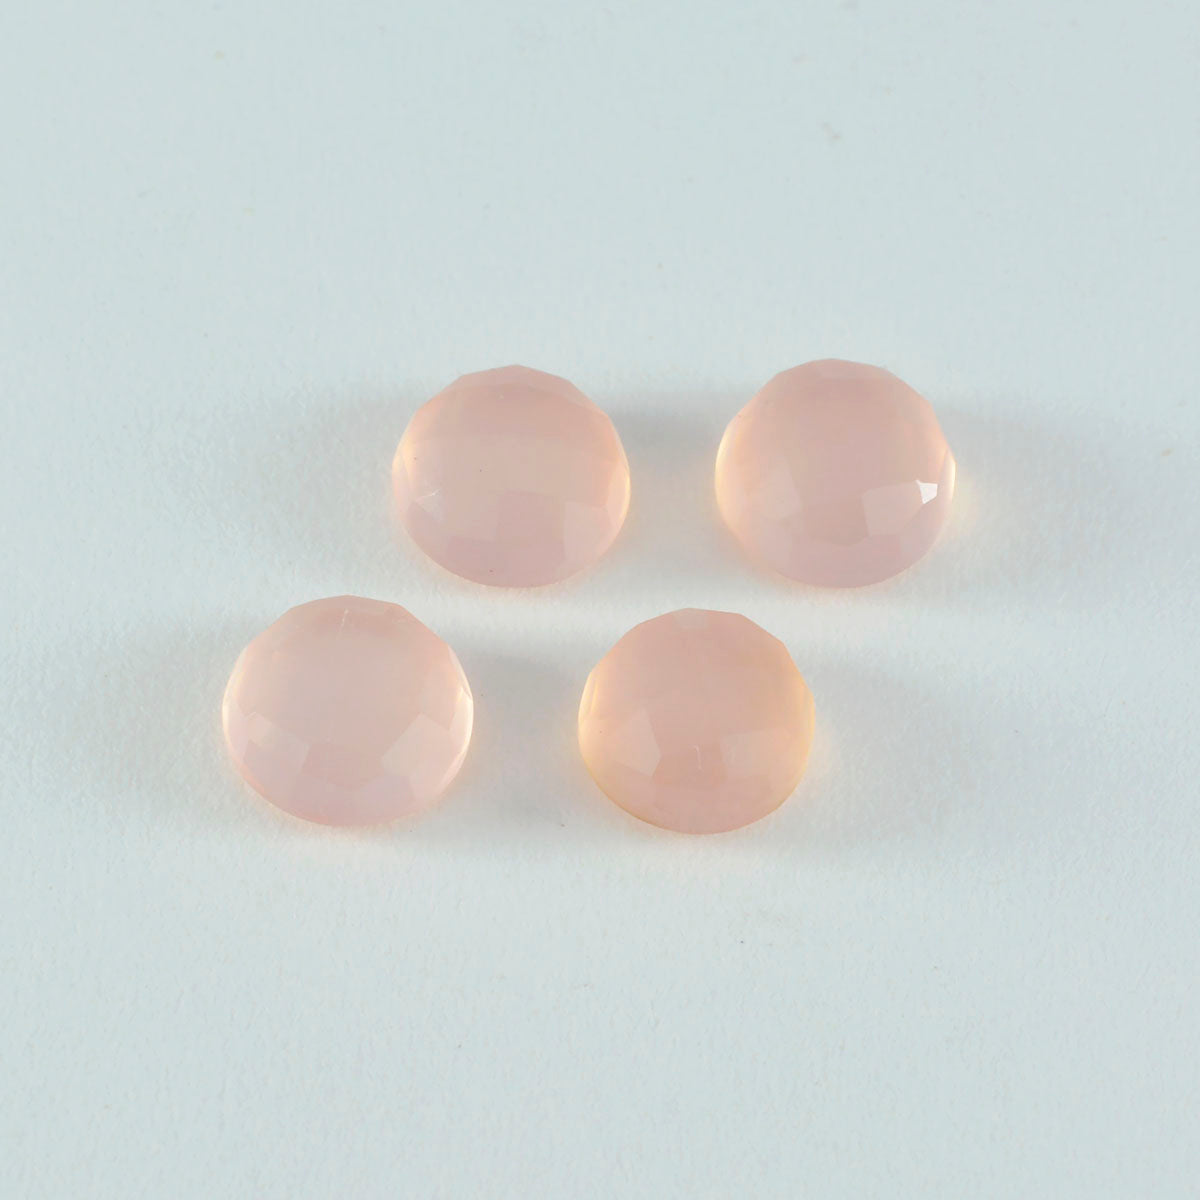 riyogems 1шт розовый кварц ограненный 14x14 мм круглая форма красивый качественный сыпучий камень